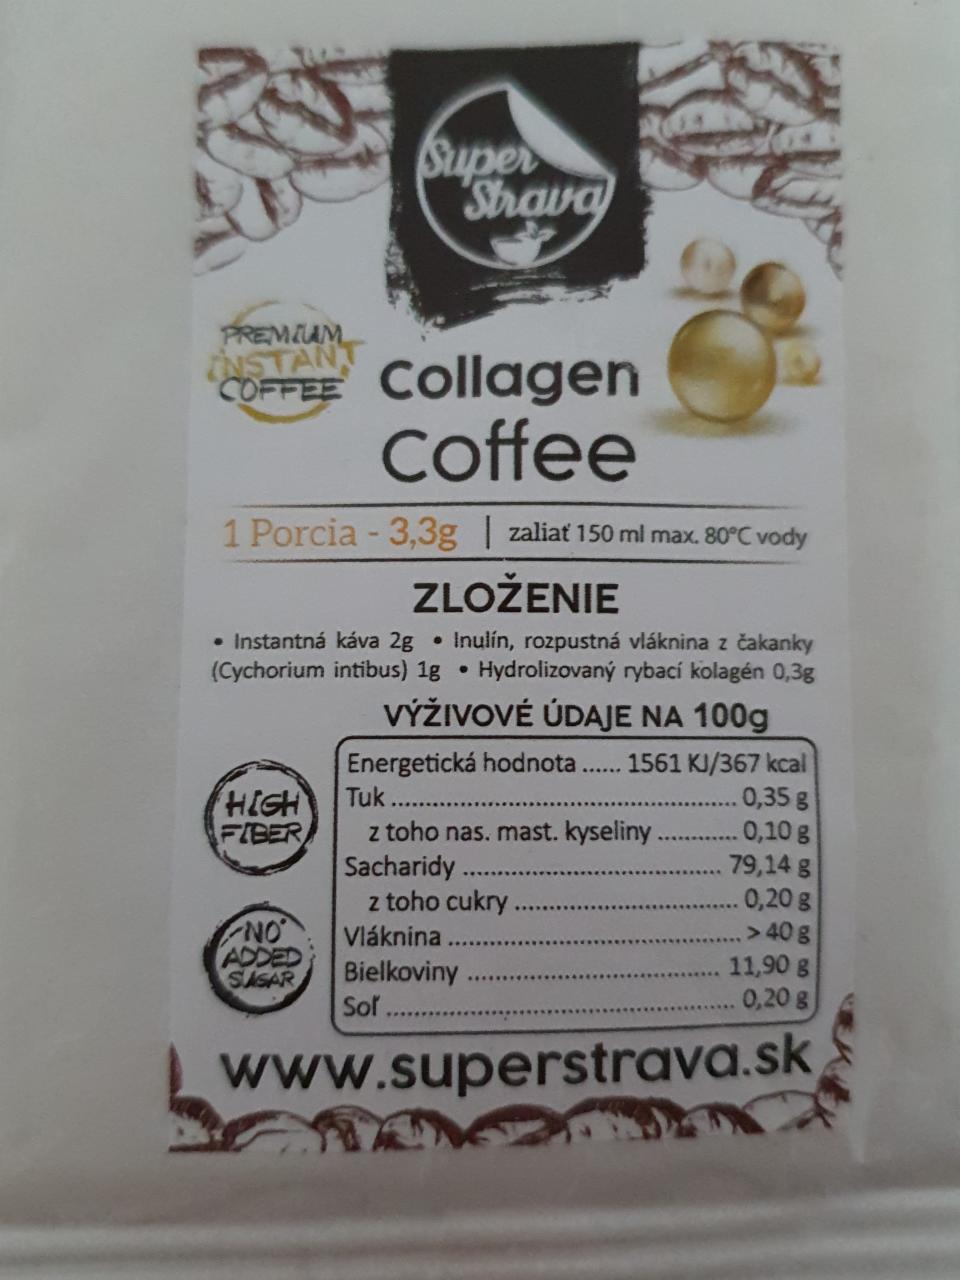 Fotografie - Collagen coffee Super strava